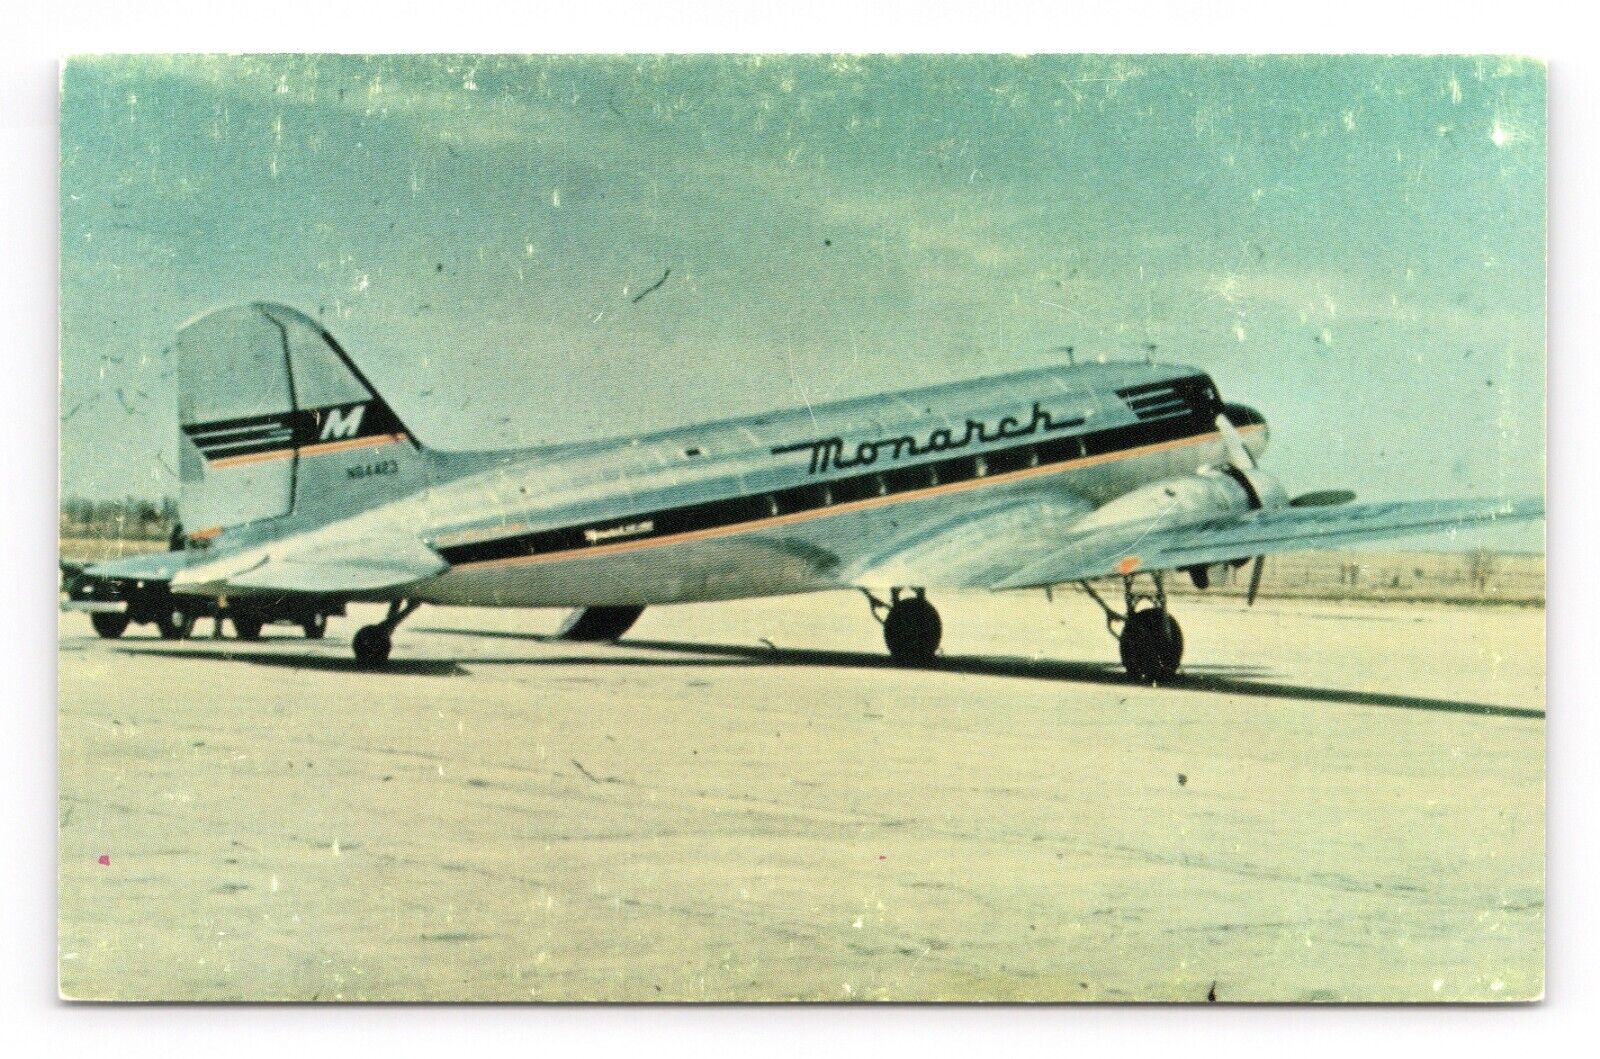 Monarch Airlines DC-3 Plane Airlines Museum Historical Aircraft UNP Postcard P1